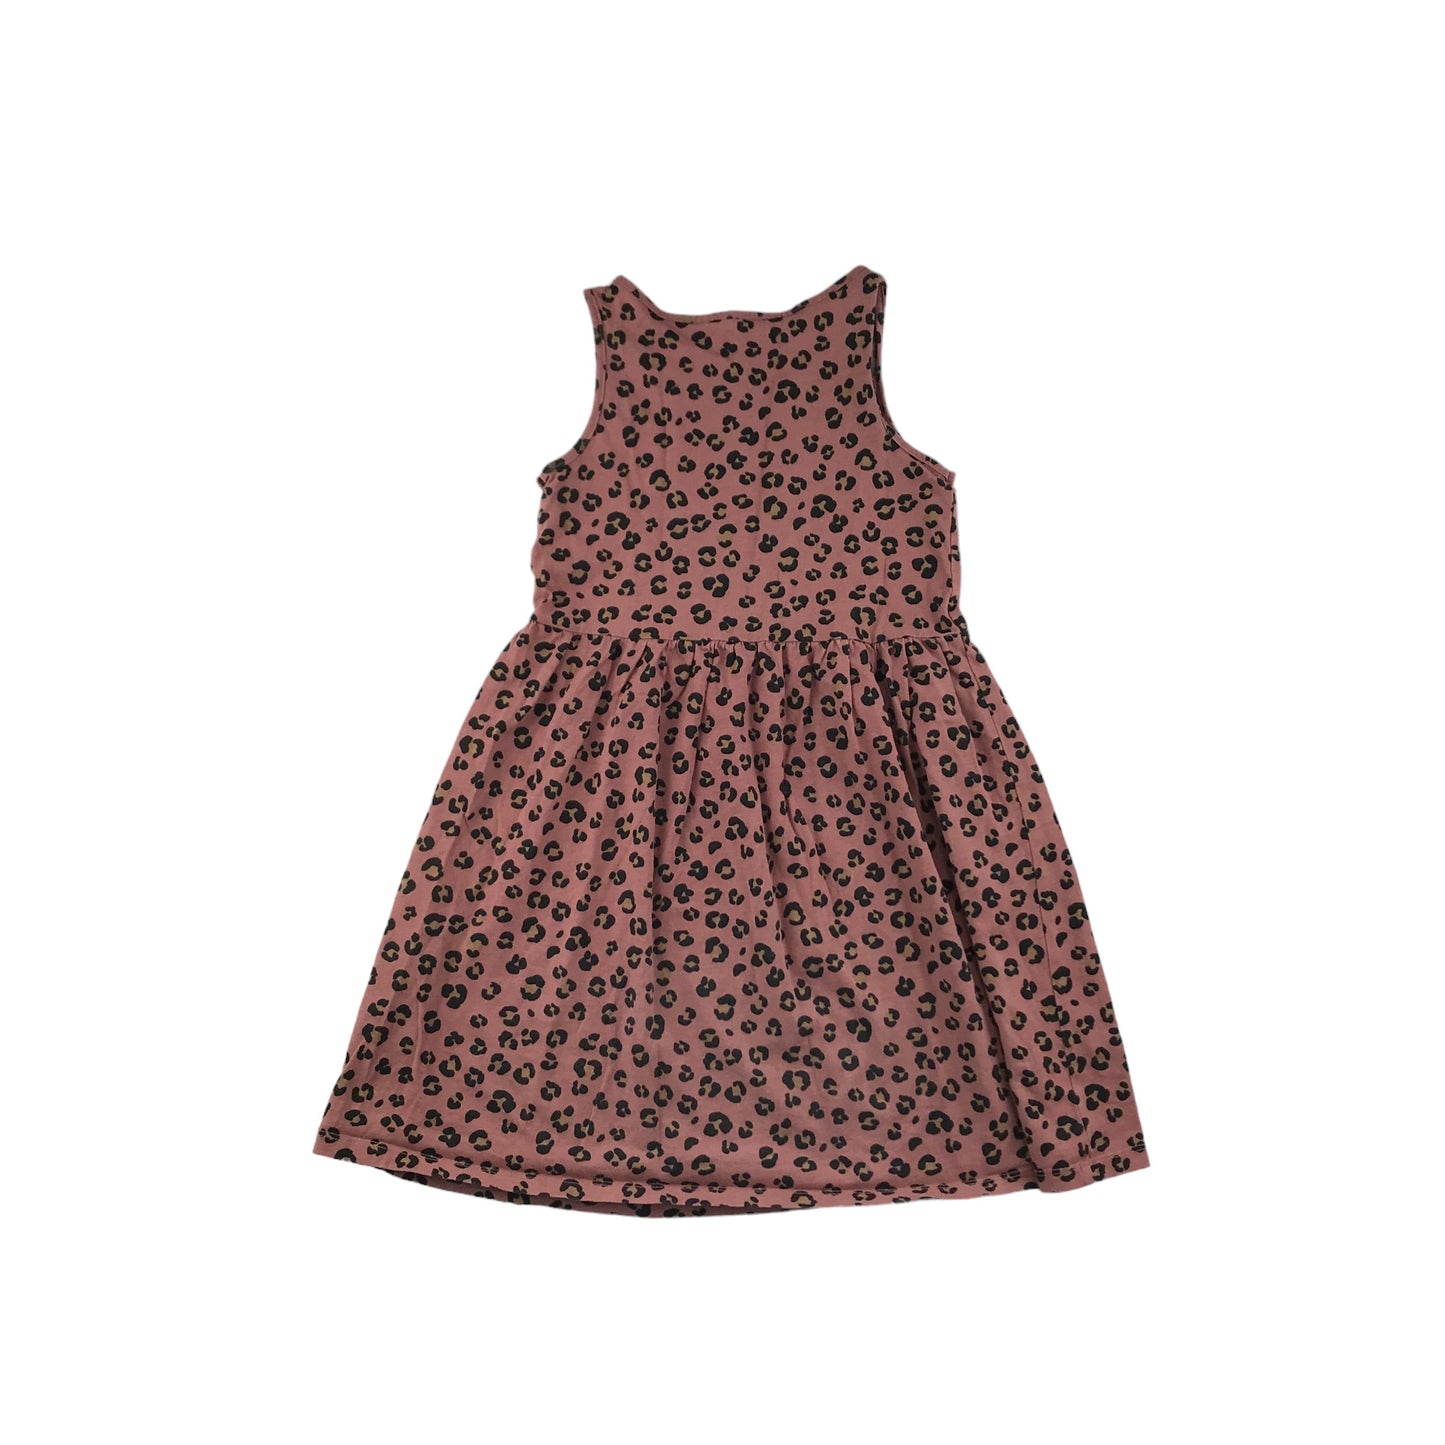 H&M Dress Age 6-8 Light Terracotta Leopard Print Cotton